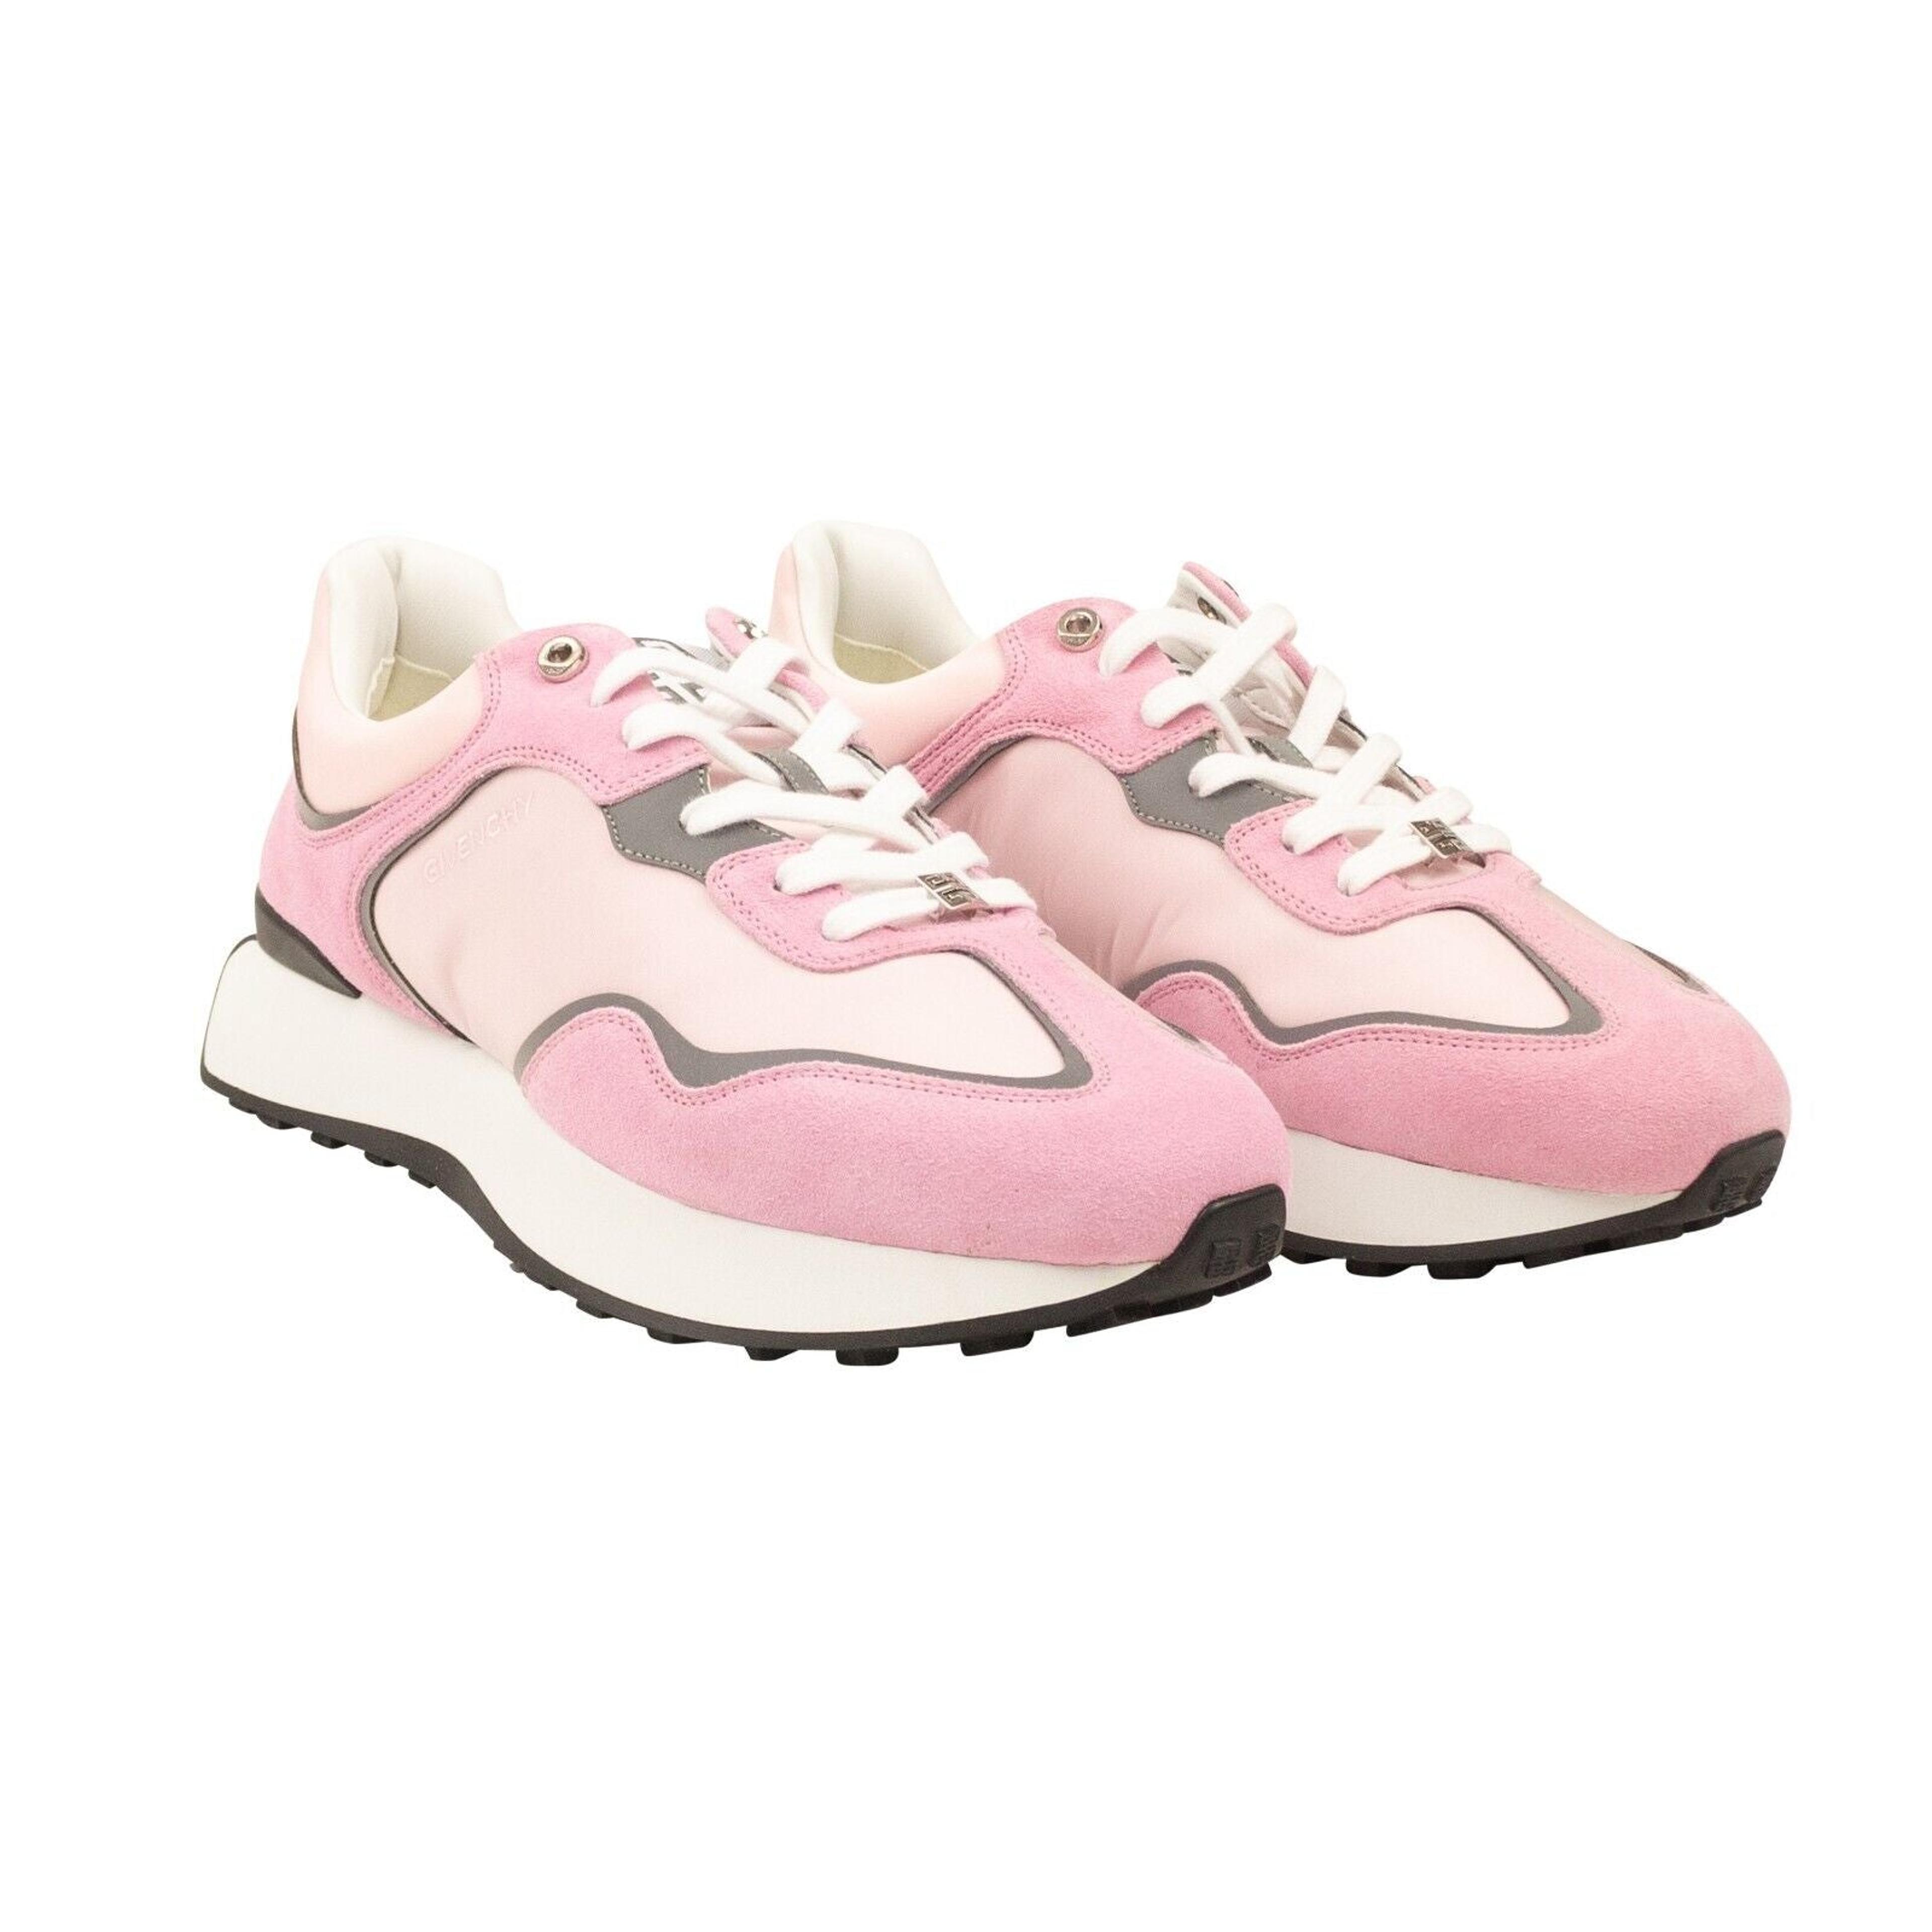 Alternate View 2 of Baby Pink Runner Sneakers